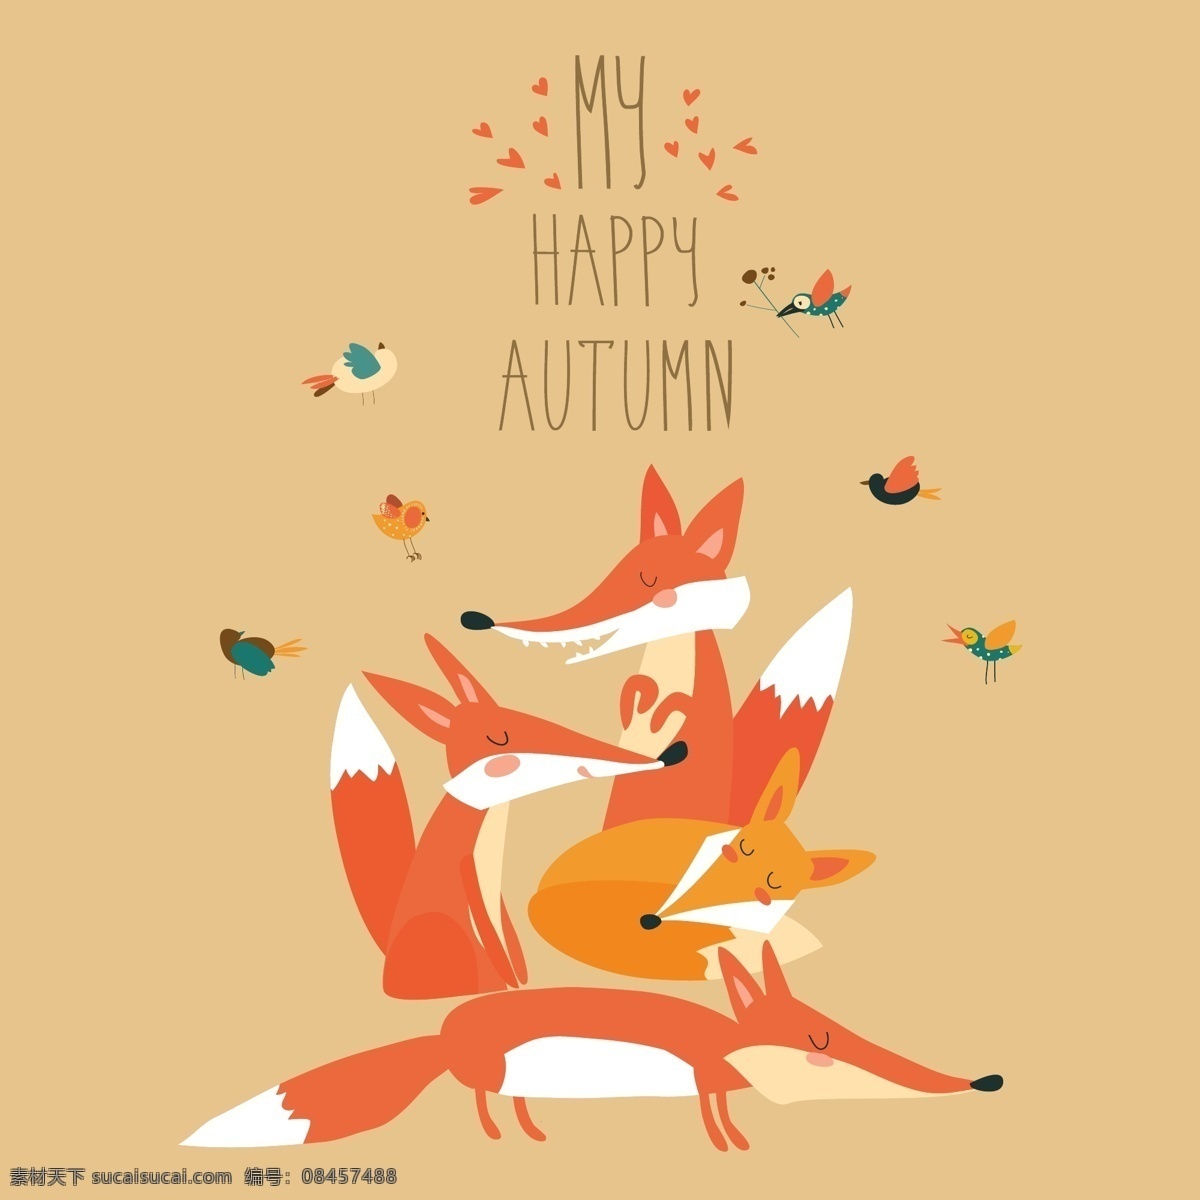 可爱 狐狸 鸟类 矢量 秋季 插图 动物 可爱的狐狸 深秋 矢量动物